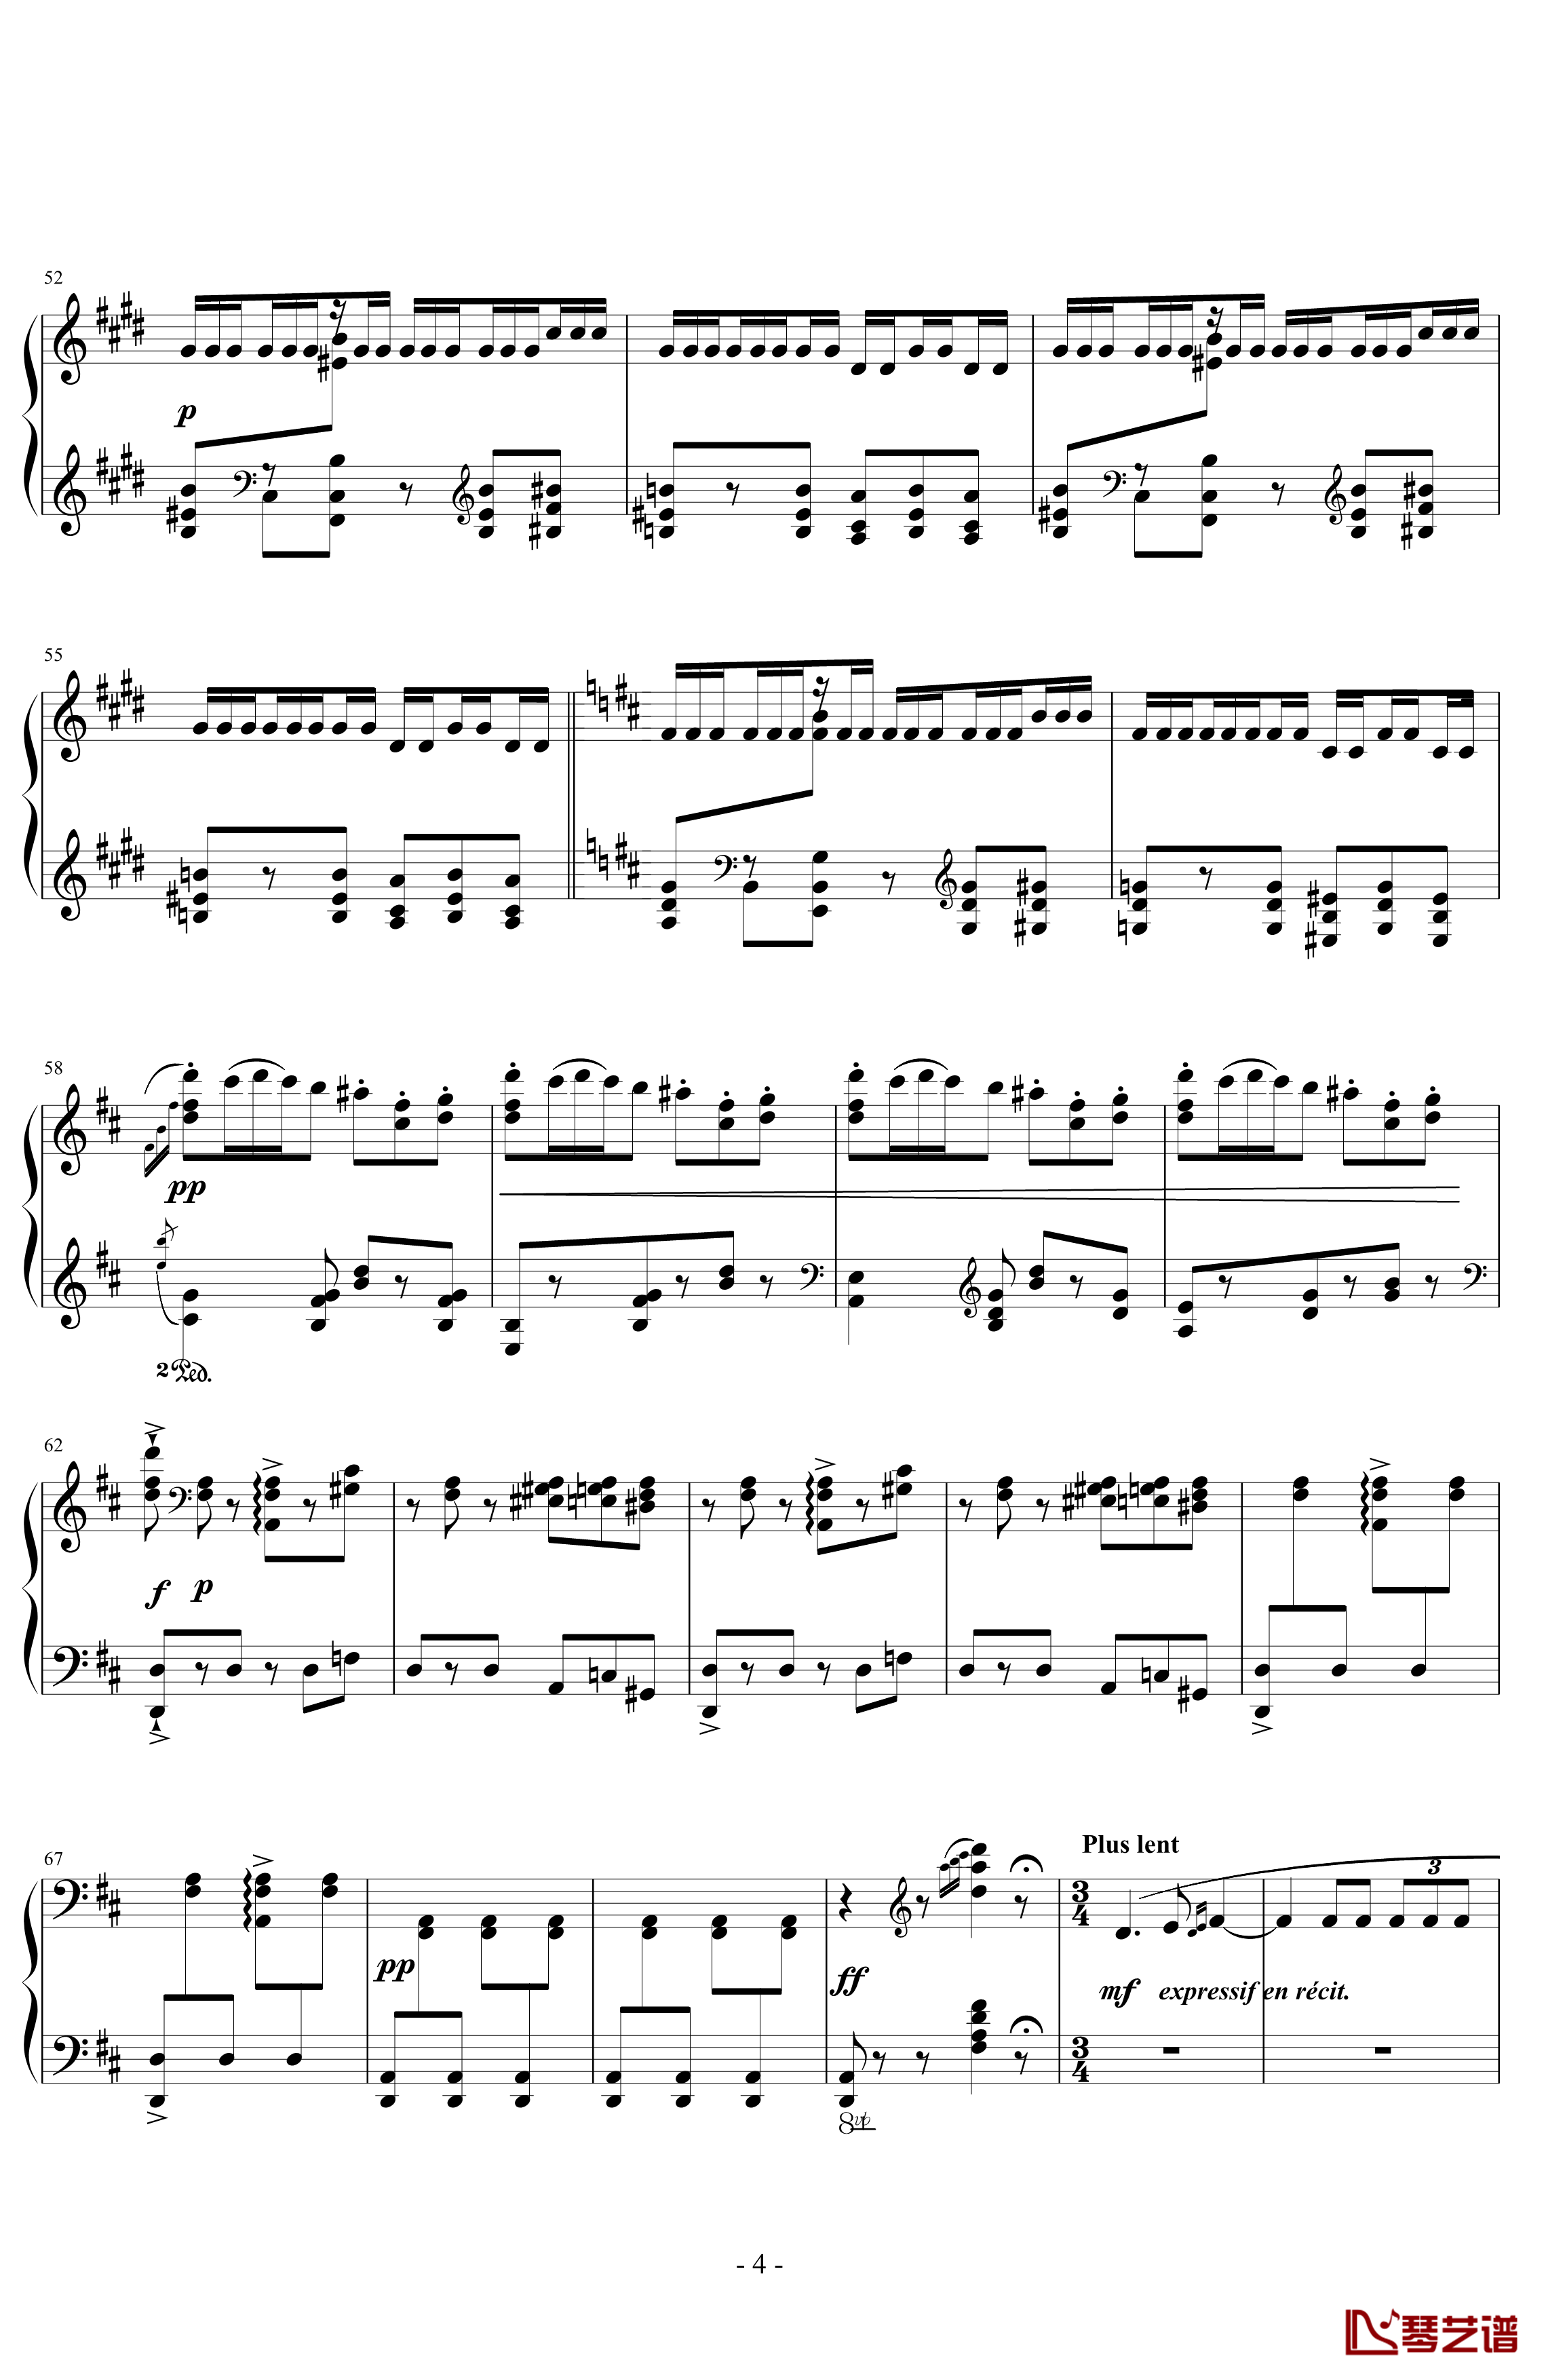 丑角的晨歌钢琴谱-组曲第4首-拉威尔-Ravel4